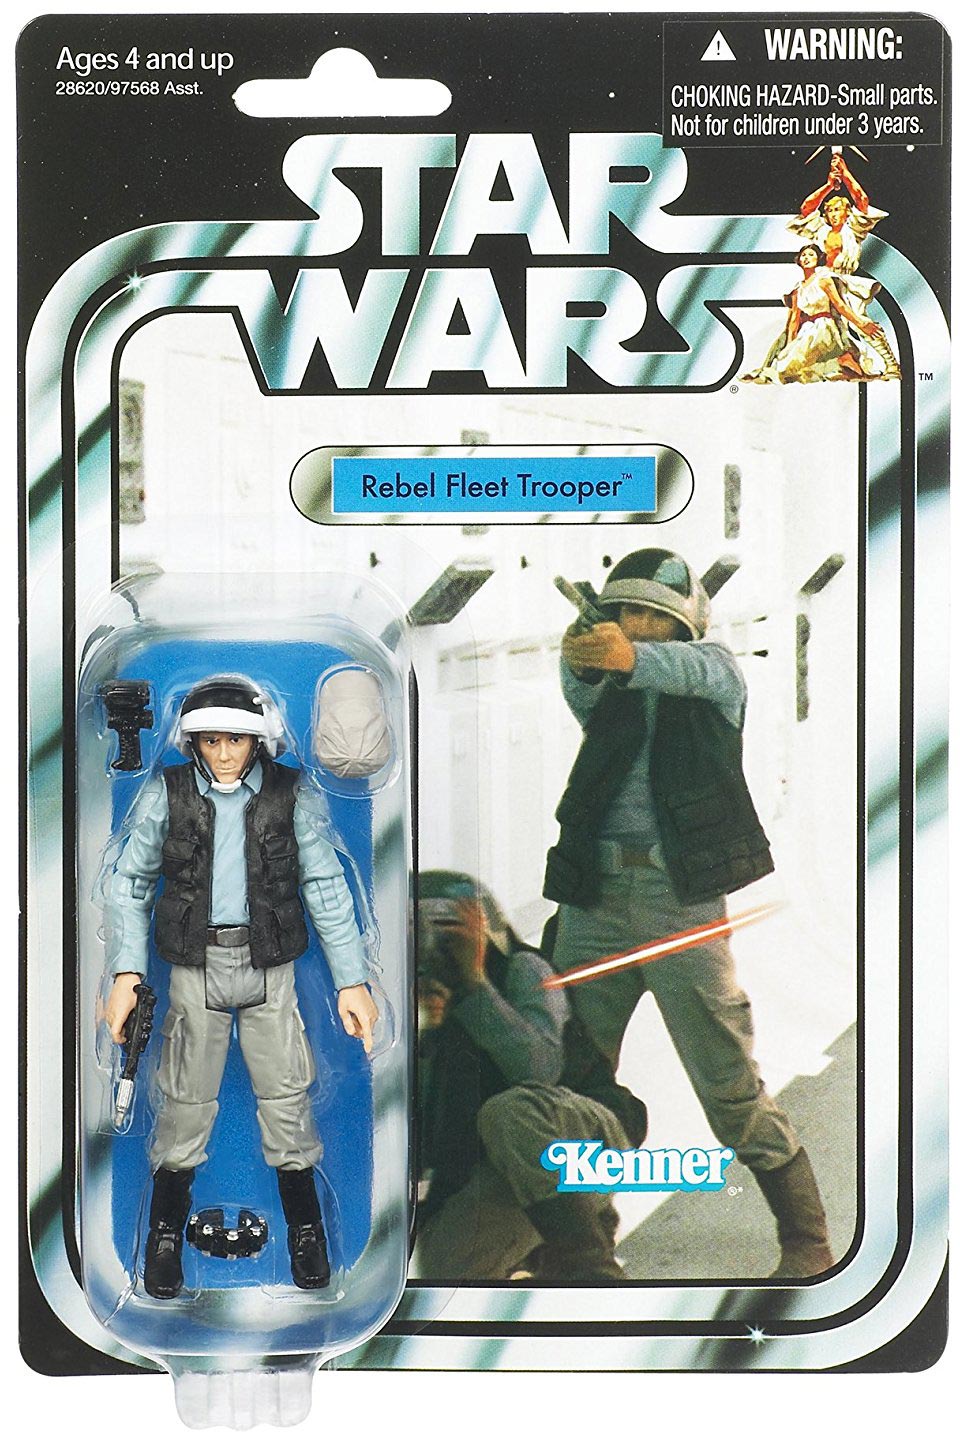 Rebel Fleet Trooper